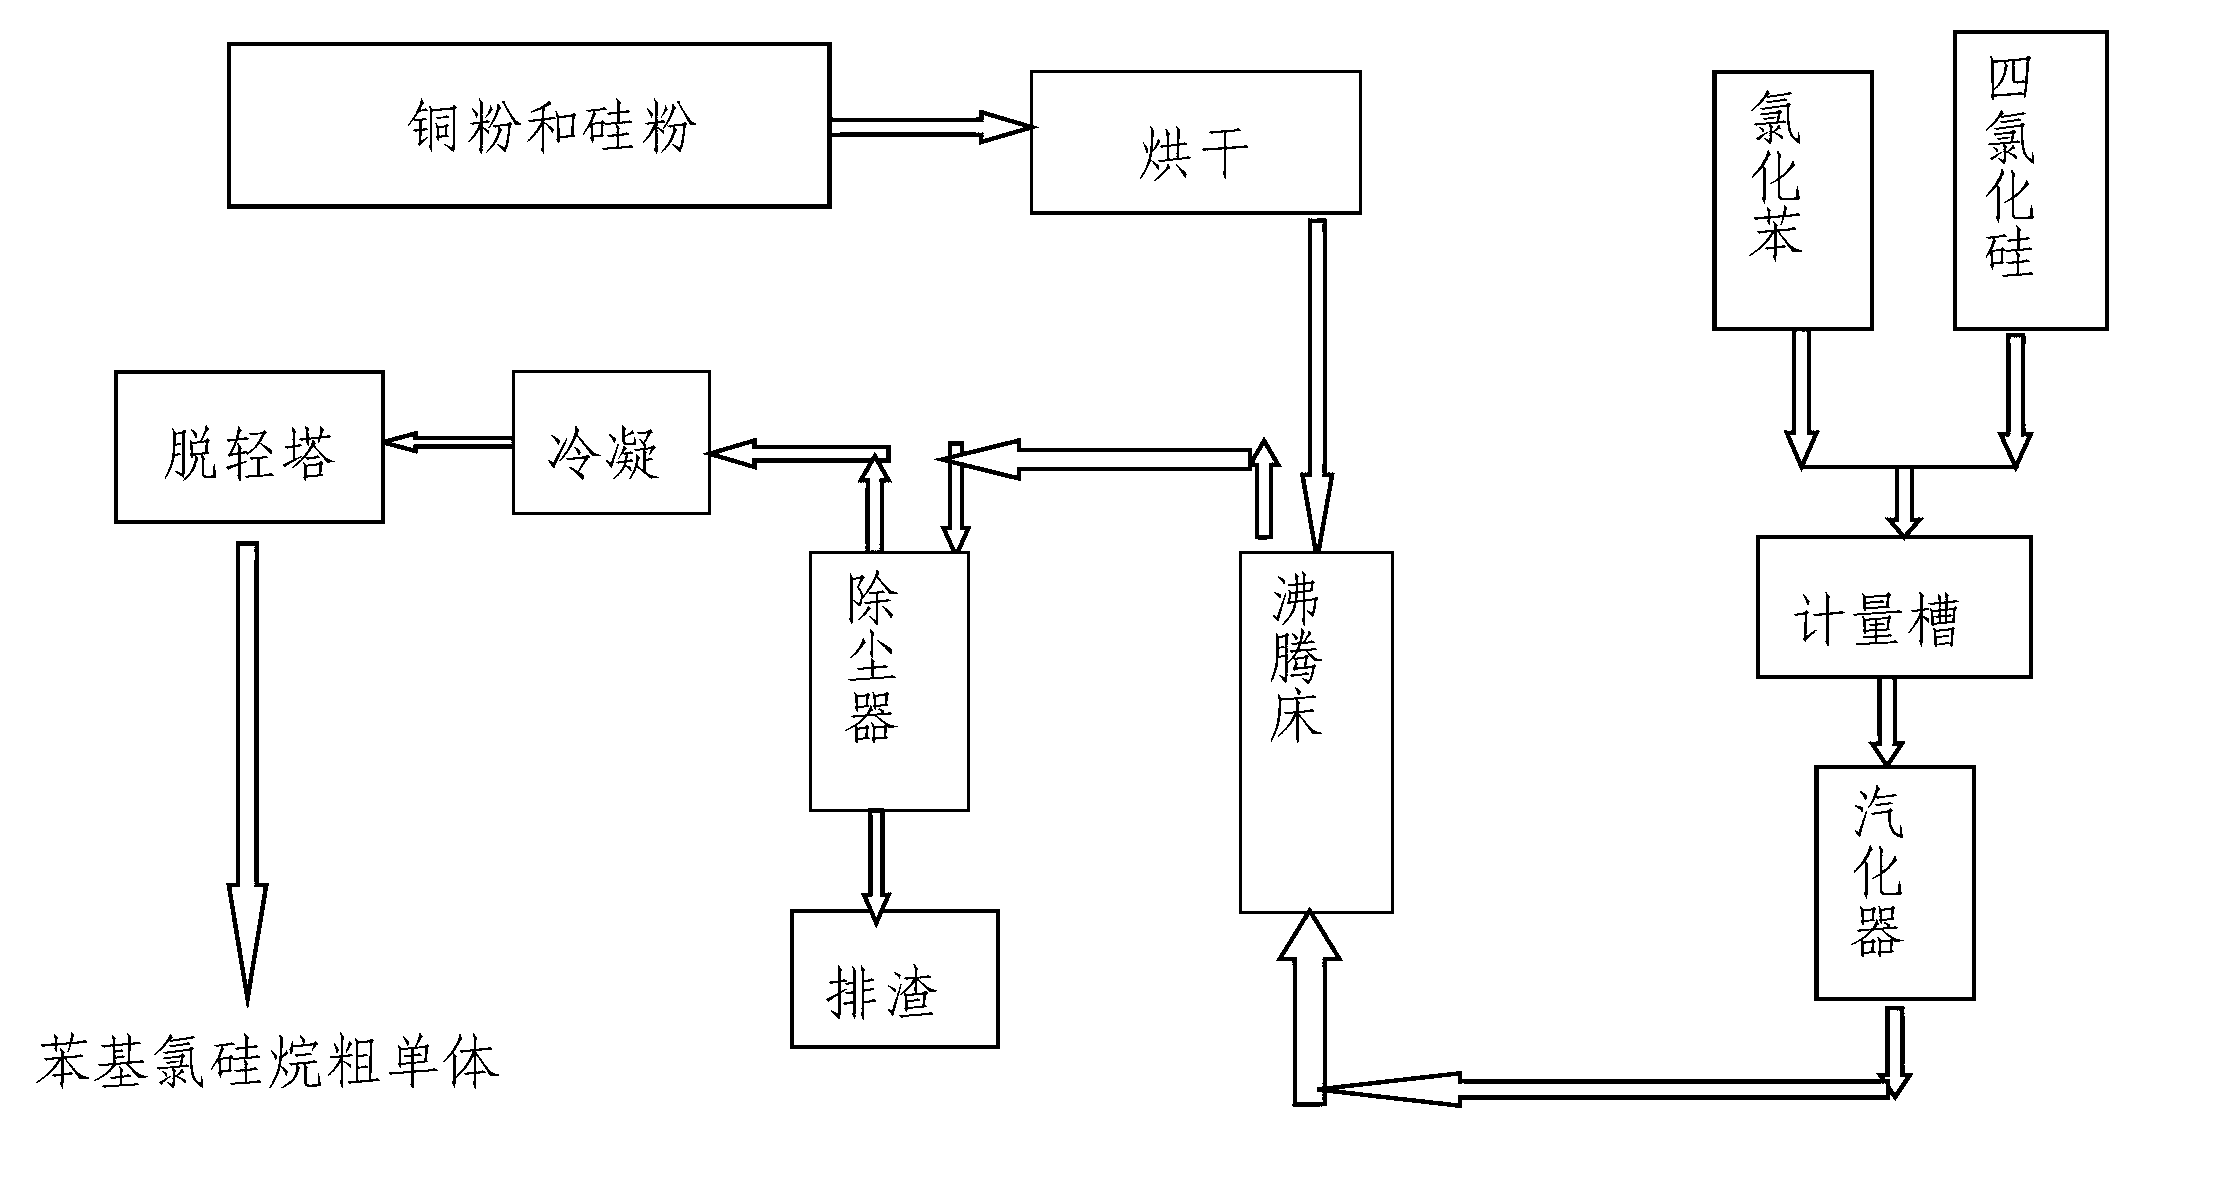 Preparation method of phenyl chlorosilane